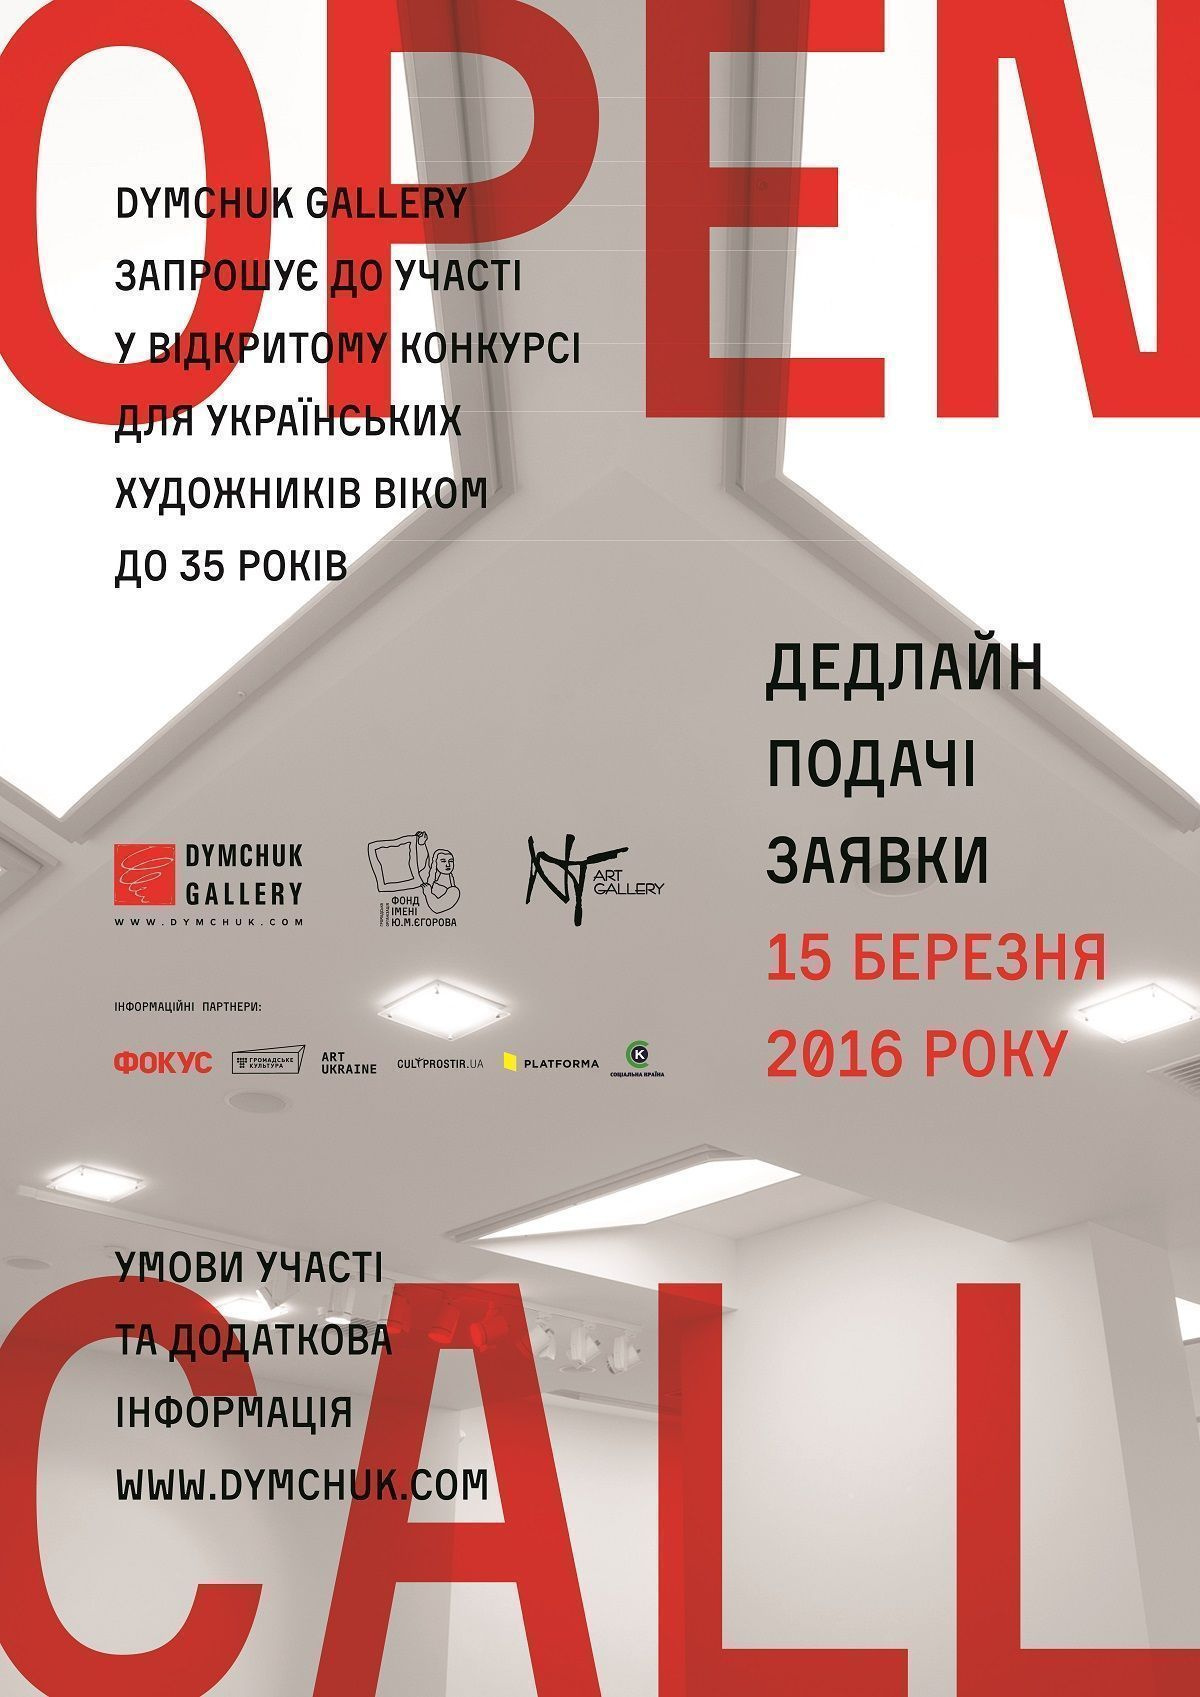 Новый конкурс для молодых украинских художников от Dymchuk Gallery